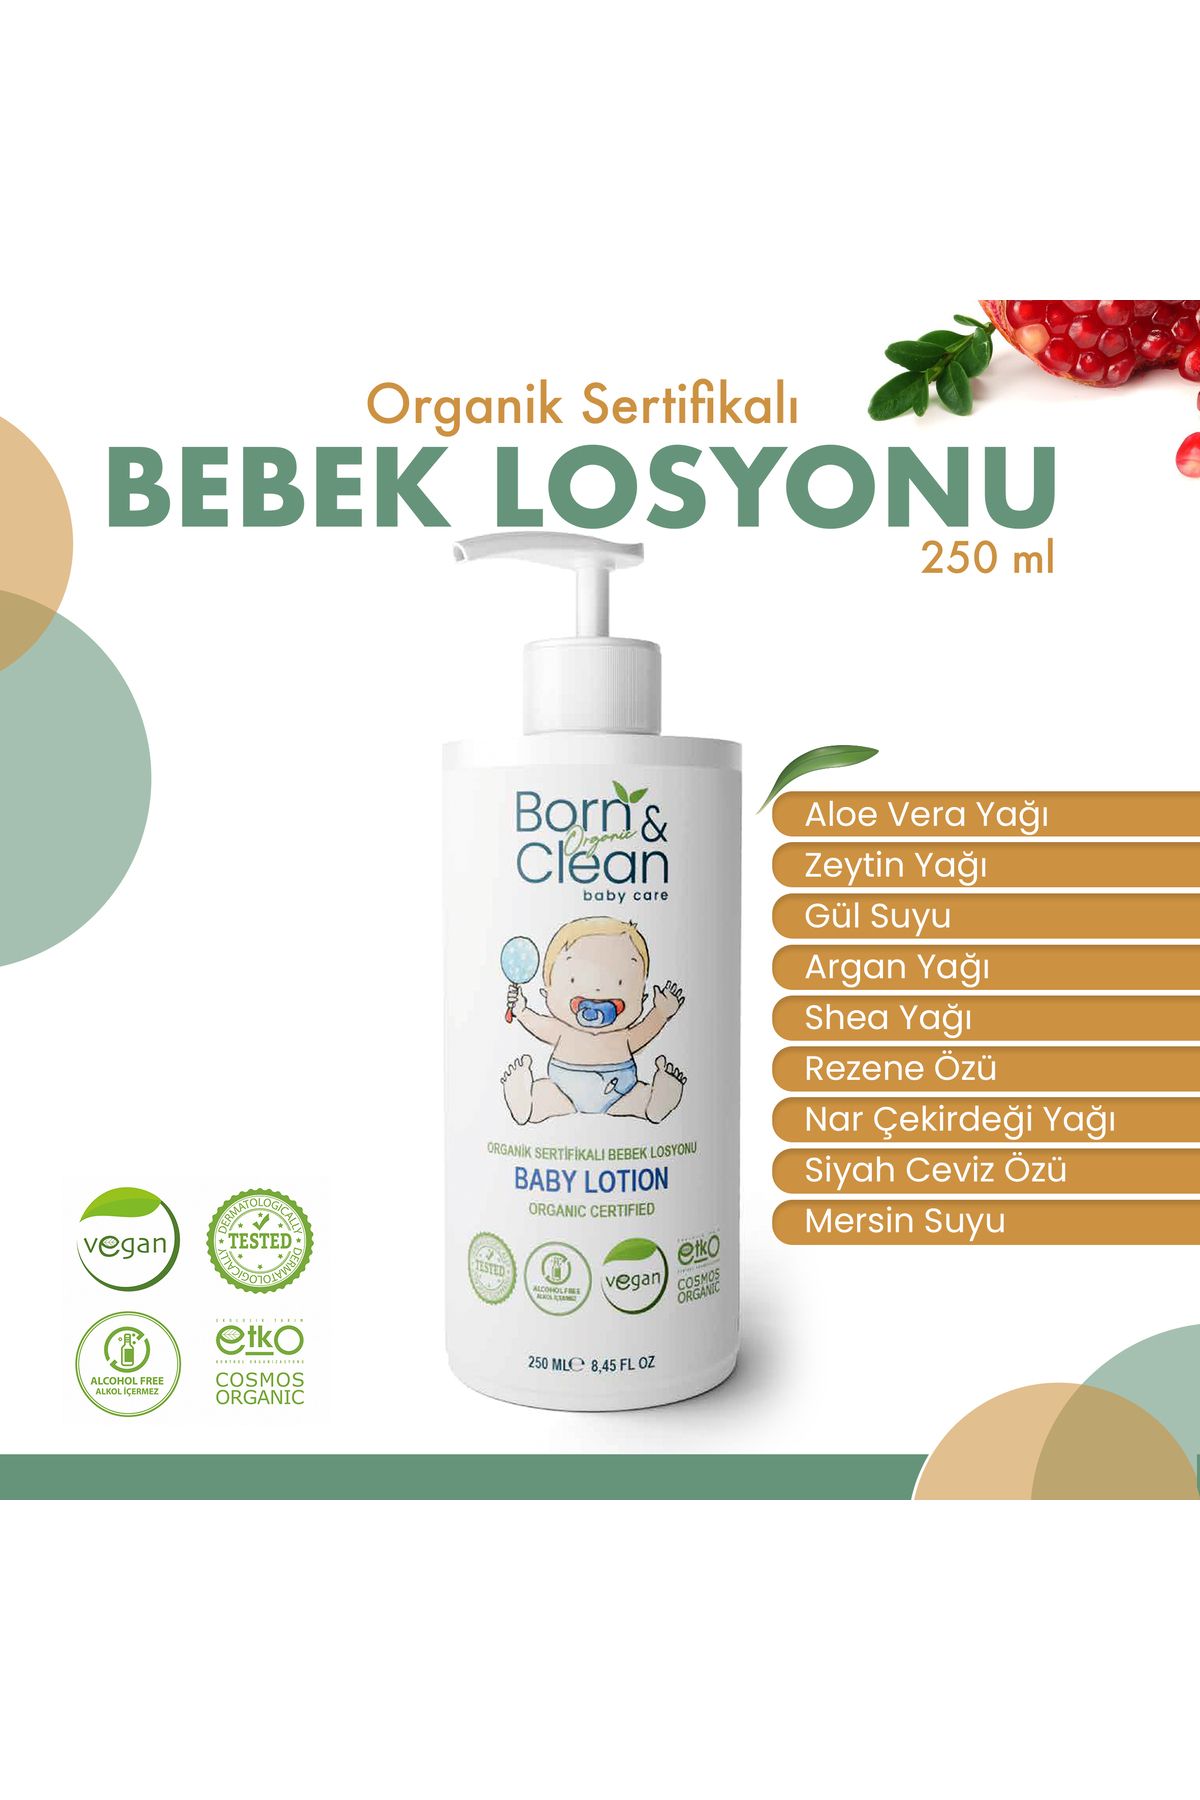 Born and Clean Baby Care Organik Sertifikalı Bebek Losyonu 250 ml